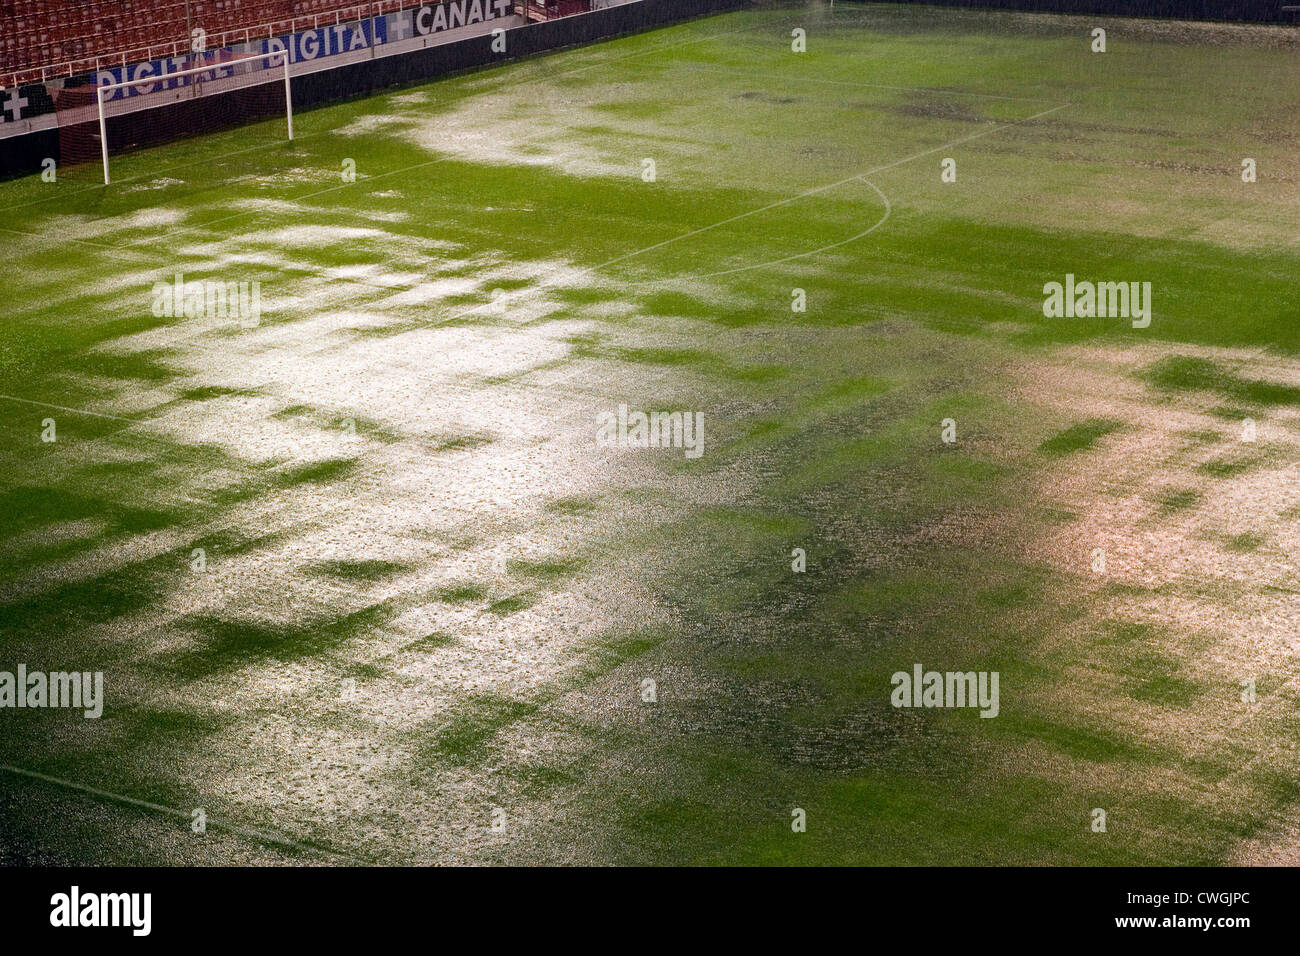 Spain, Seville, the Sanchez Pizjuan stadium in a downpour Stock Photo